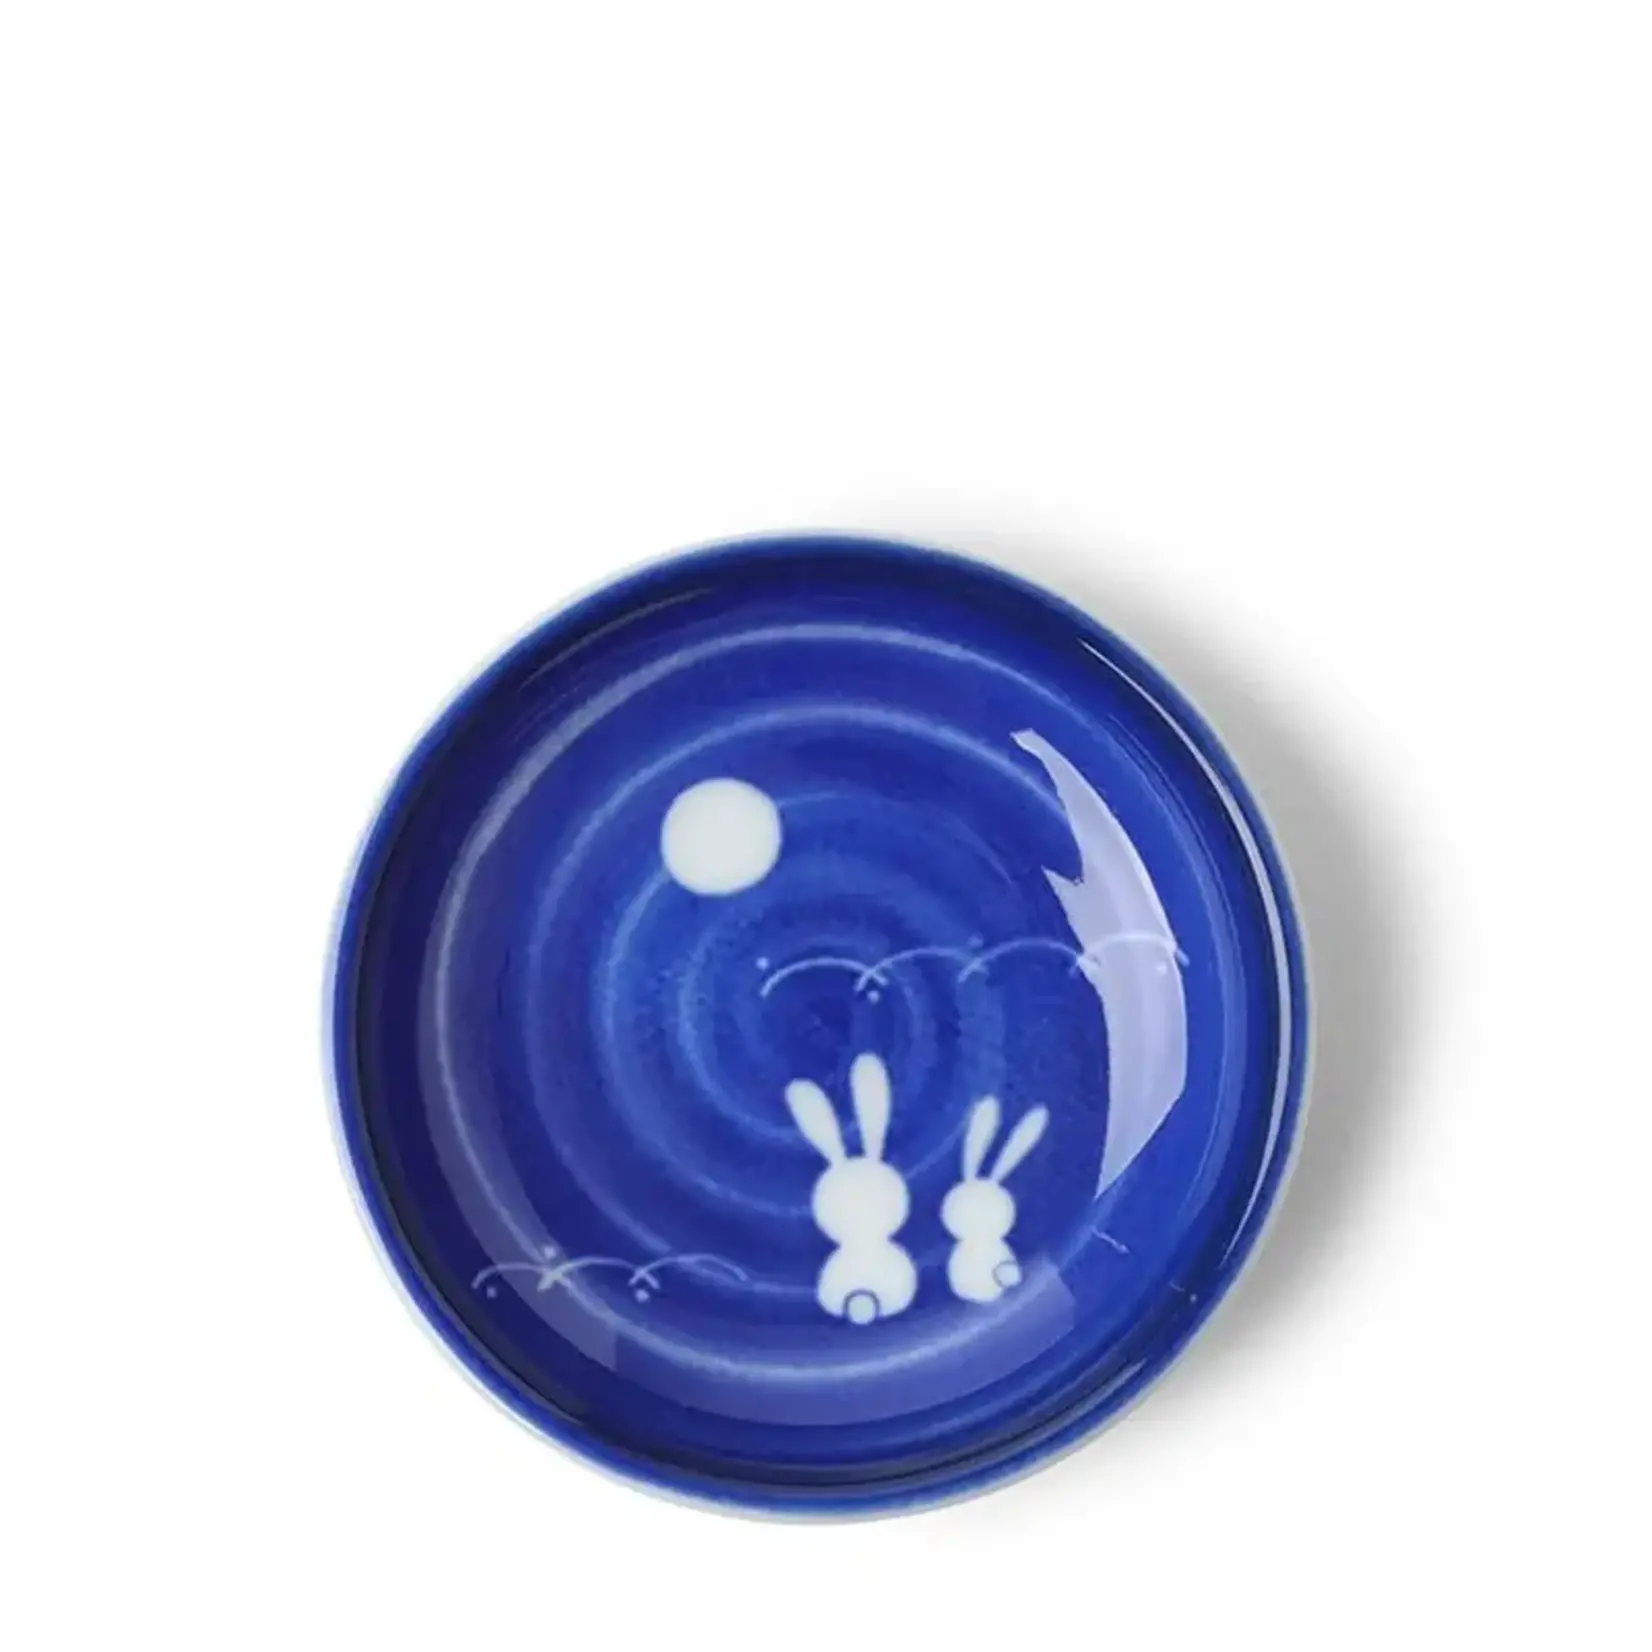 Sauce Dish - 3.75" Moon Rabbit - 160-971